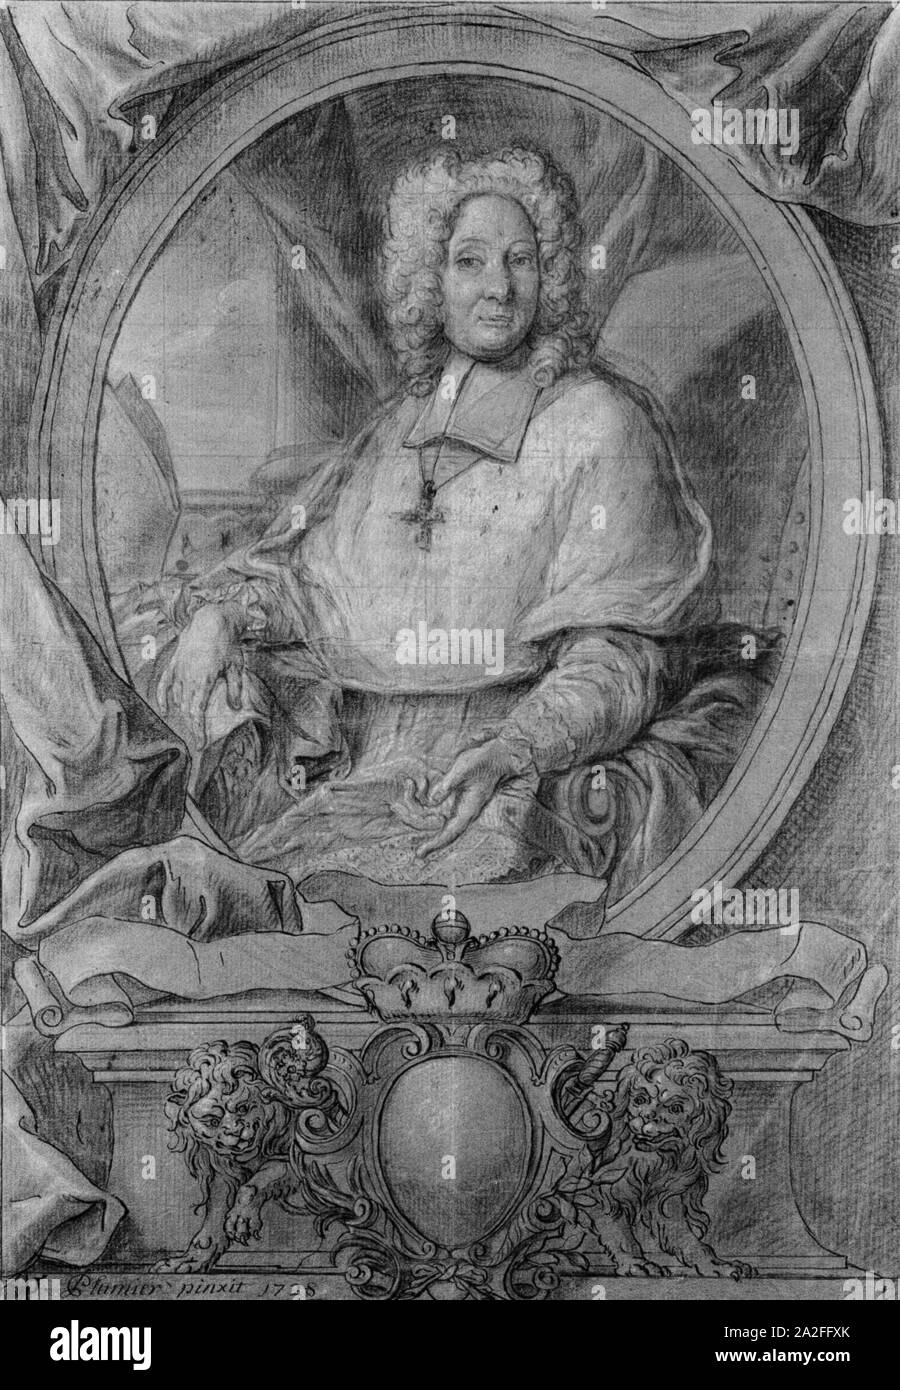 Emond Plumier, Georges Louis de Berghes, prince-évêque de Liège (1728), Cabinet des estampes et des dessins de la Ville de Liège. Banque D'Images